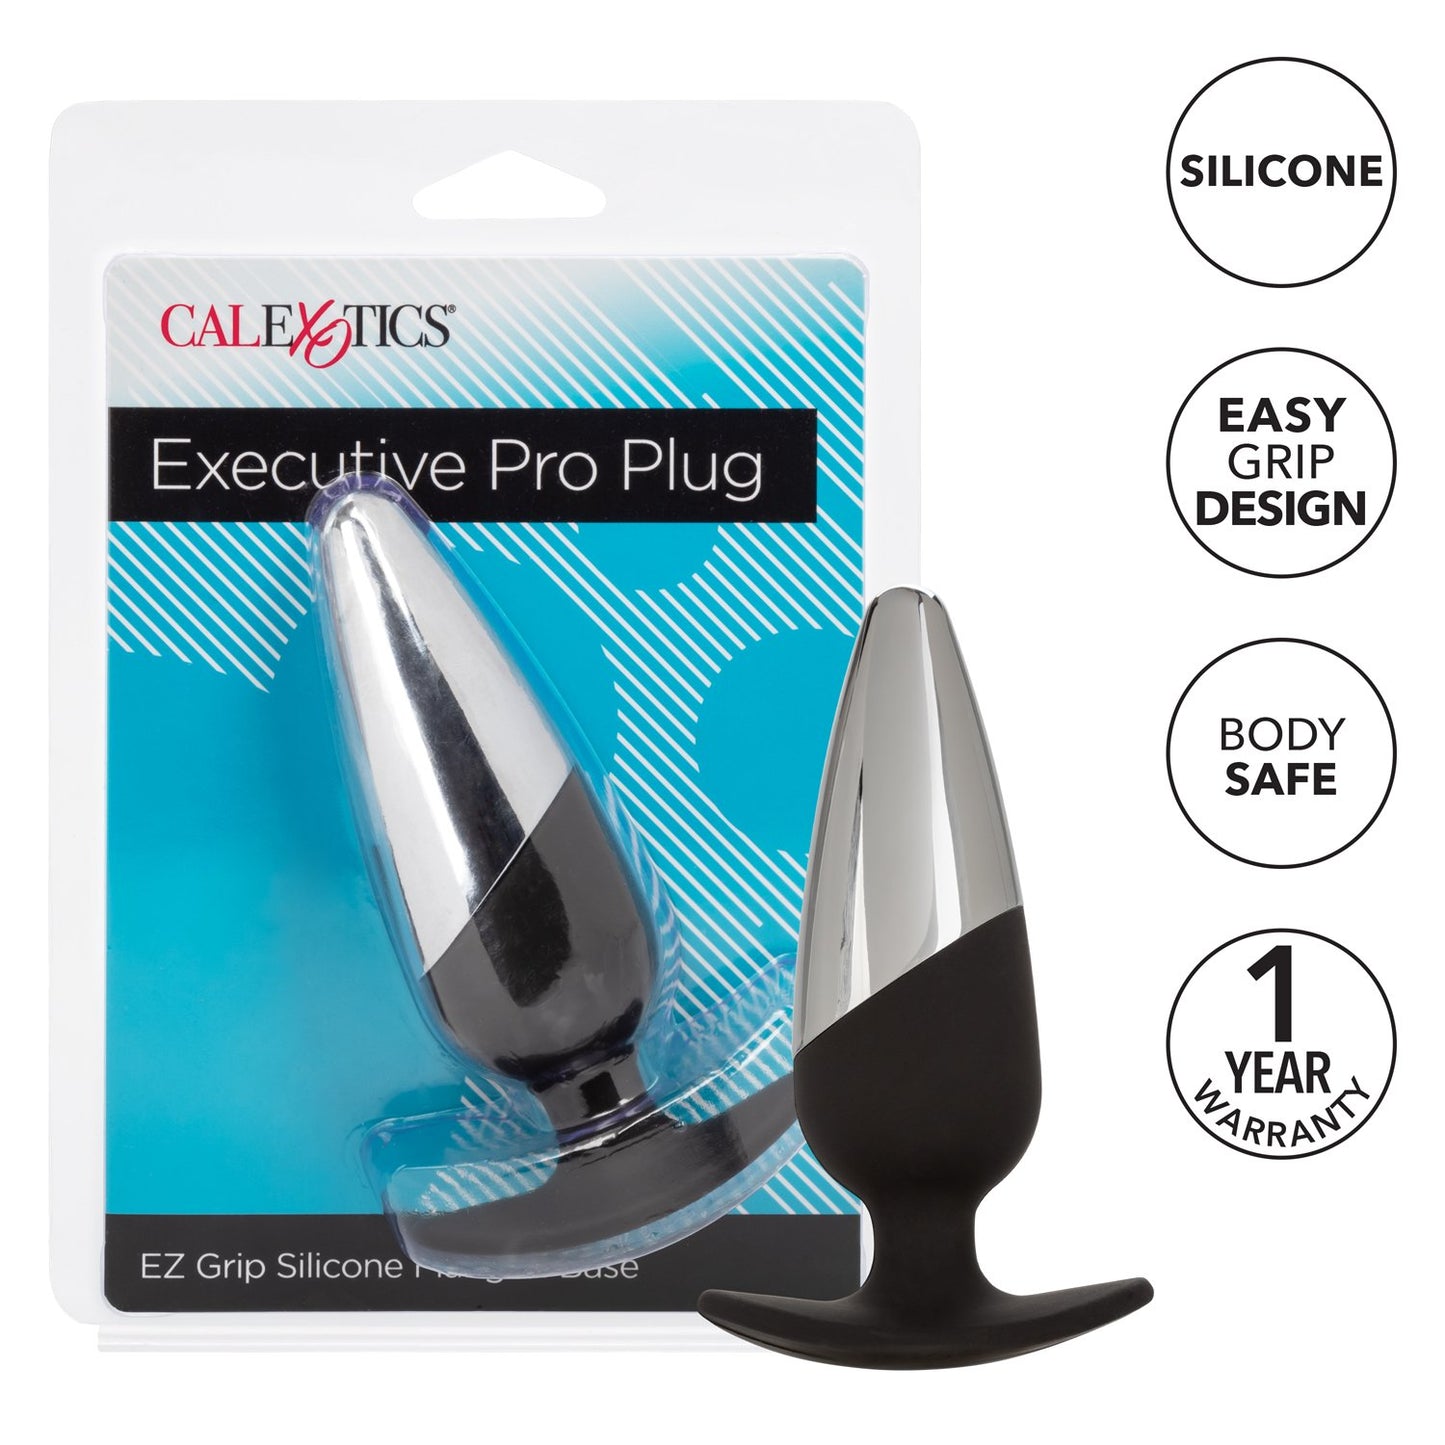 Executive Pro Plug